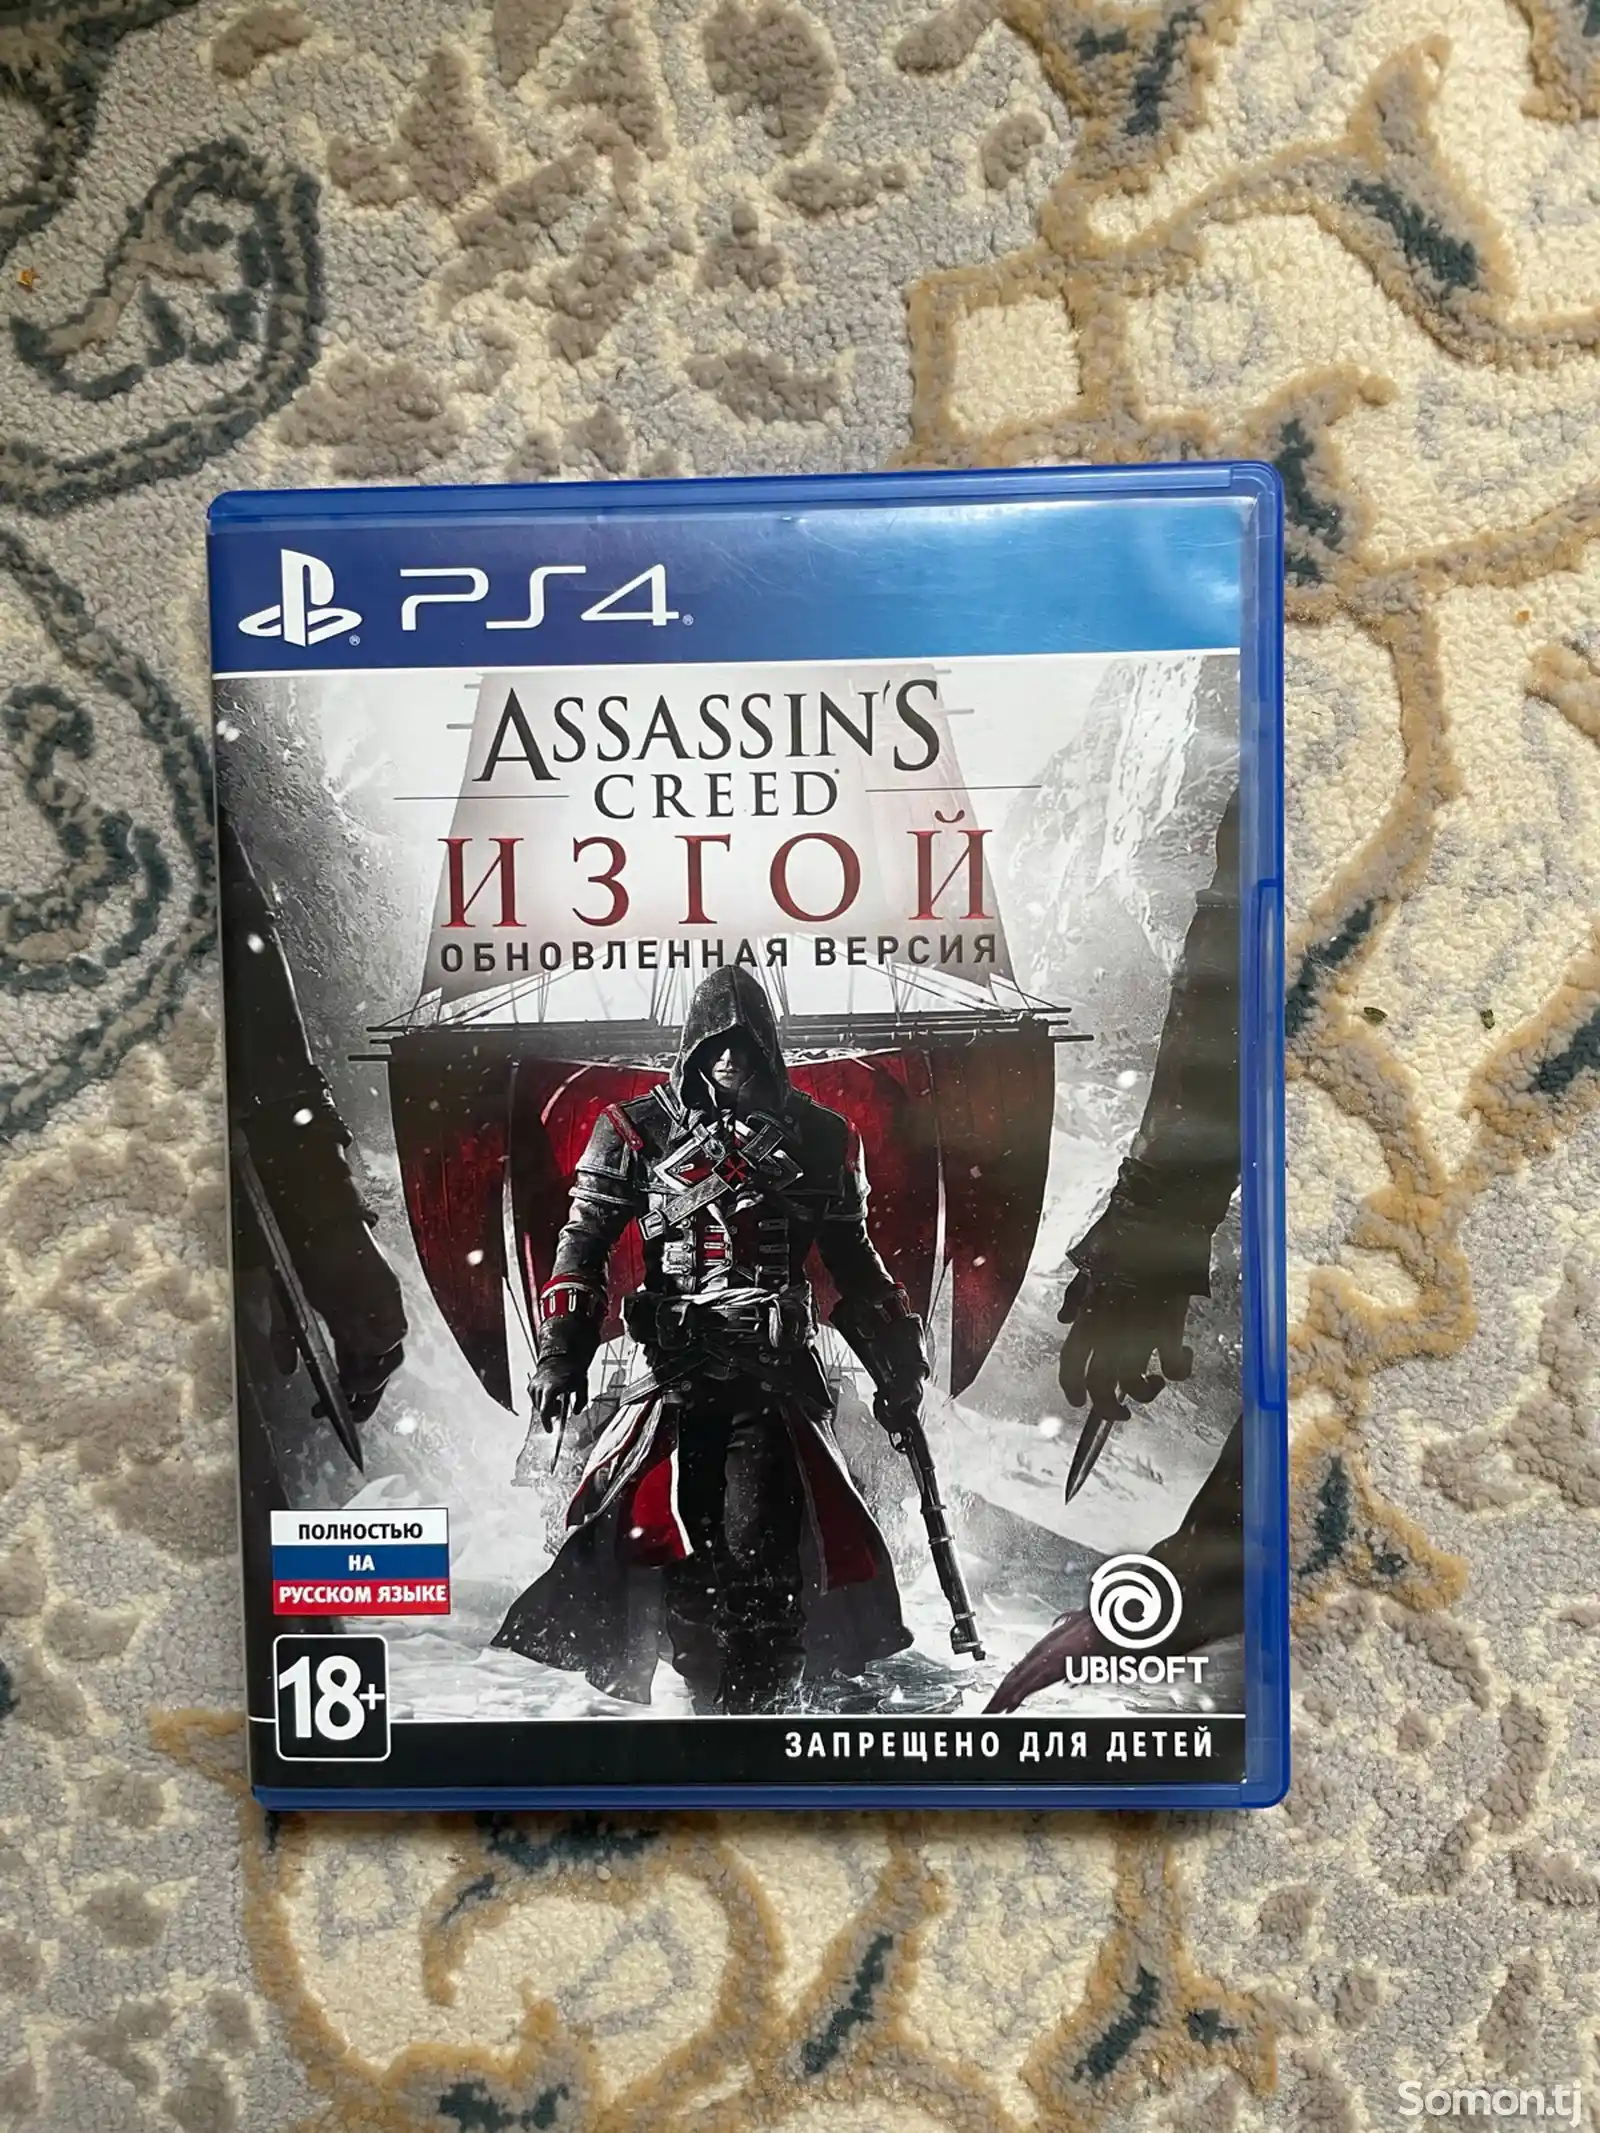 Игра Assassin's Creed - Rogue Изгой Remastered русская версия-1